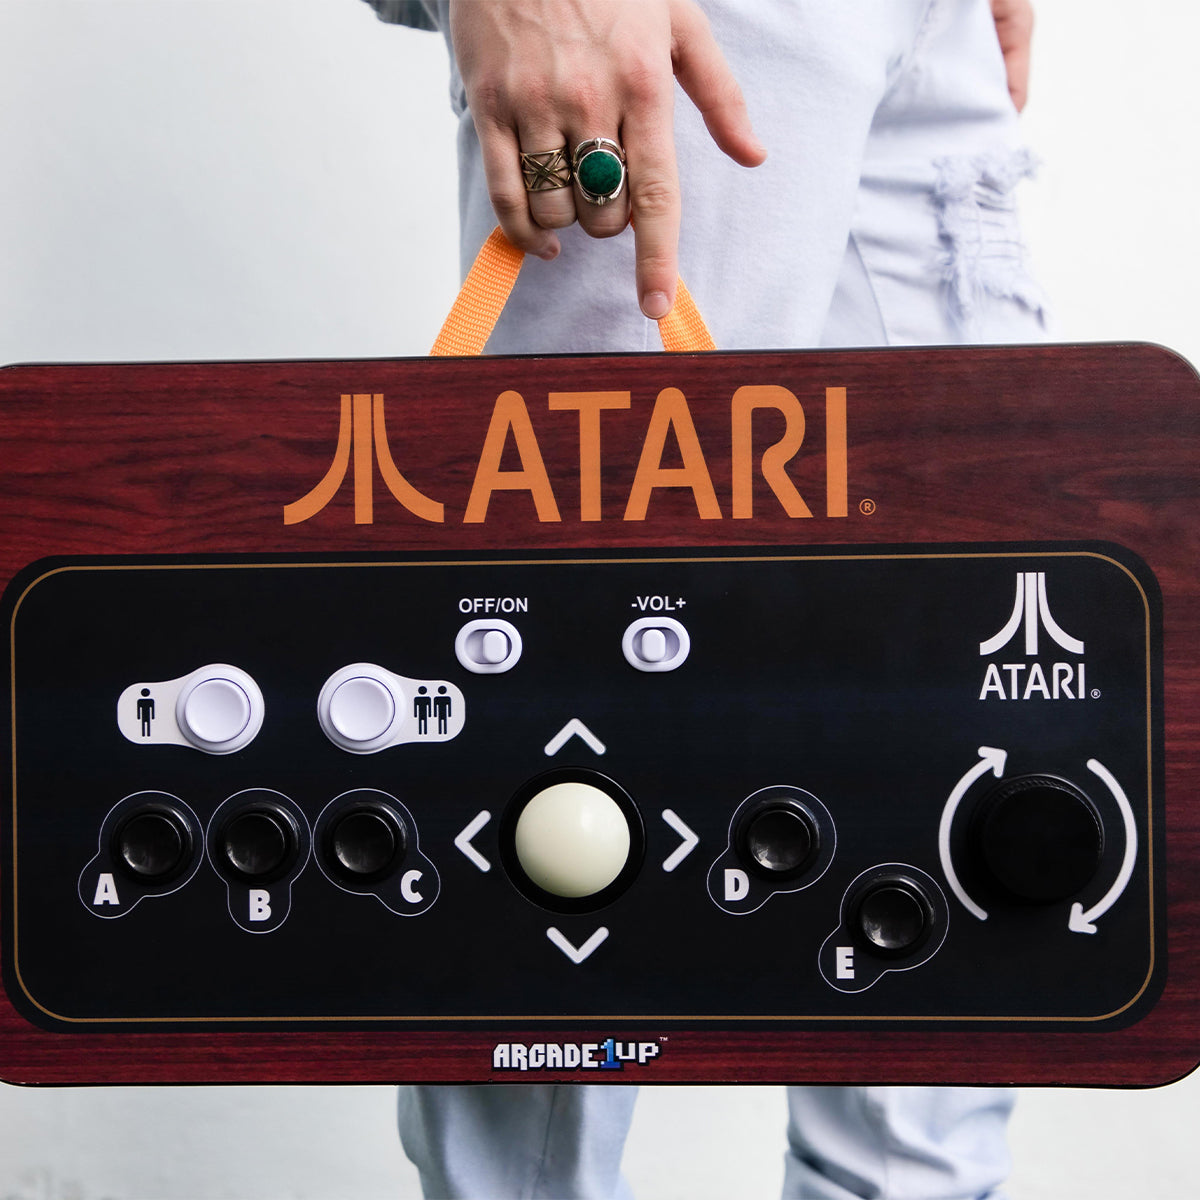 Arcade1Up Couch Falls -Atari